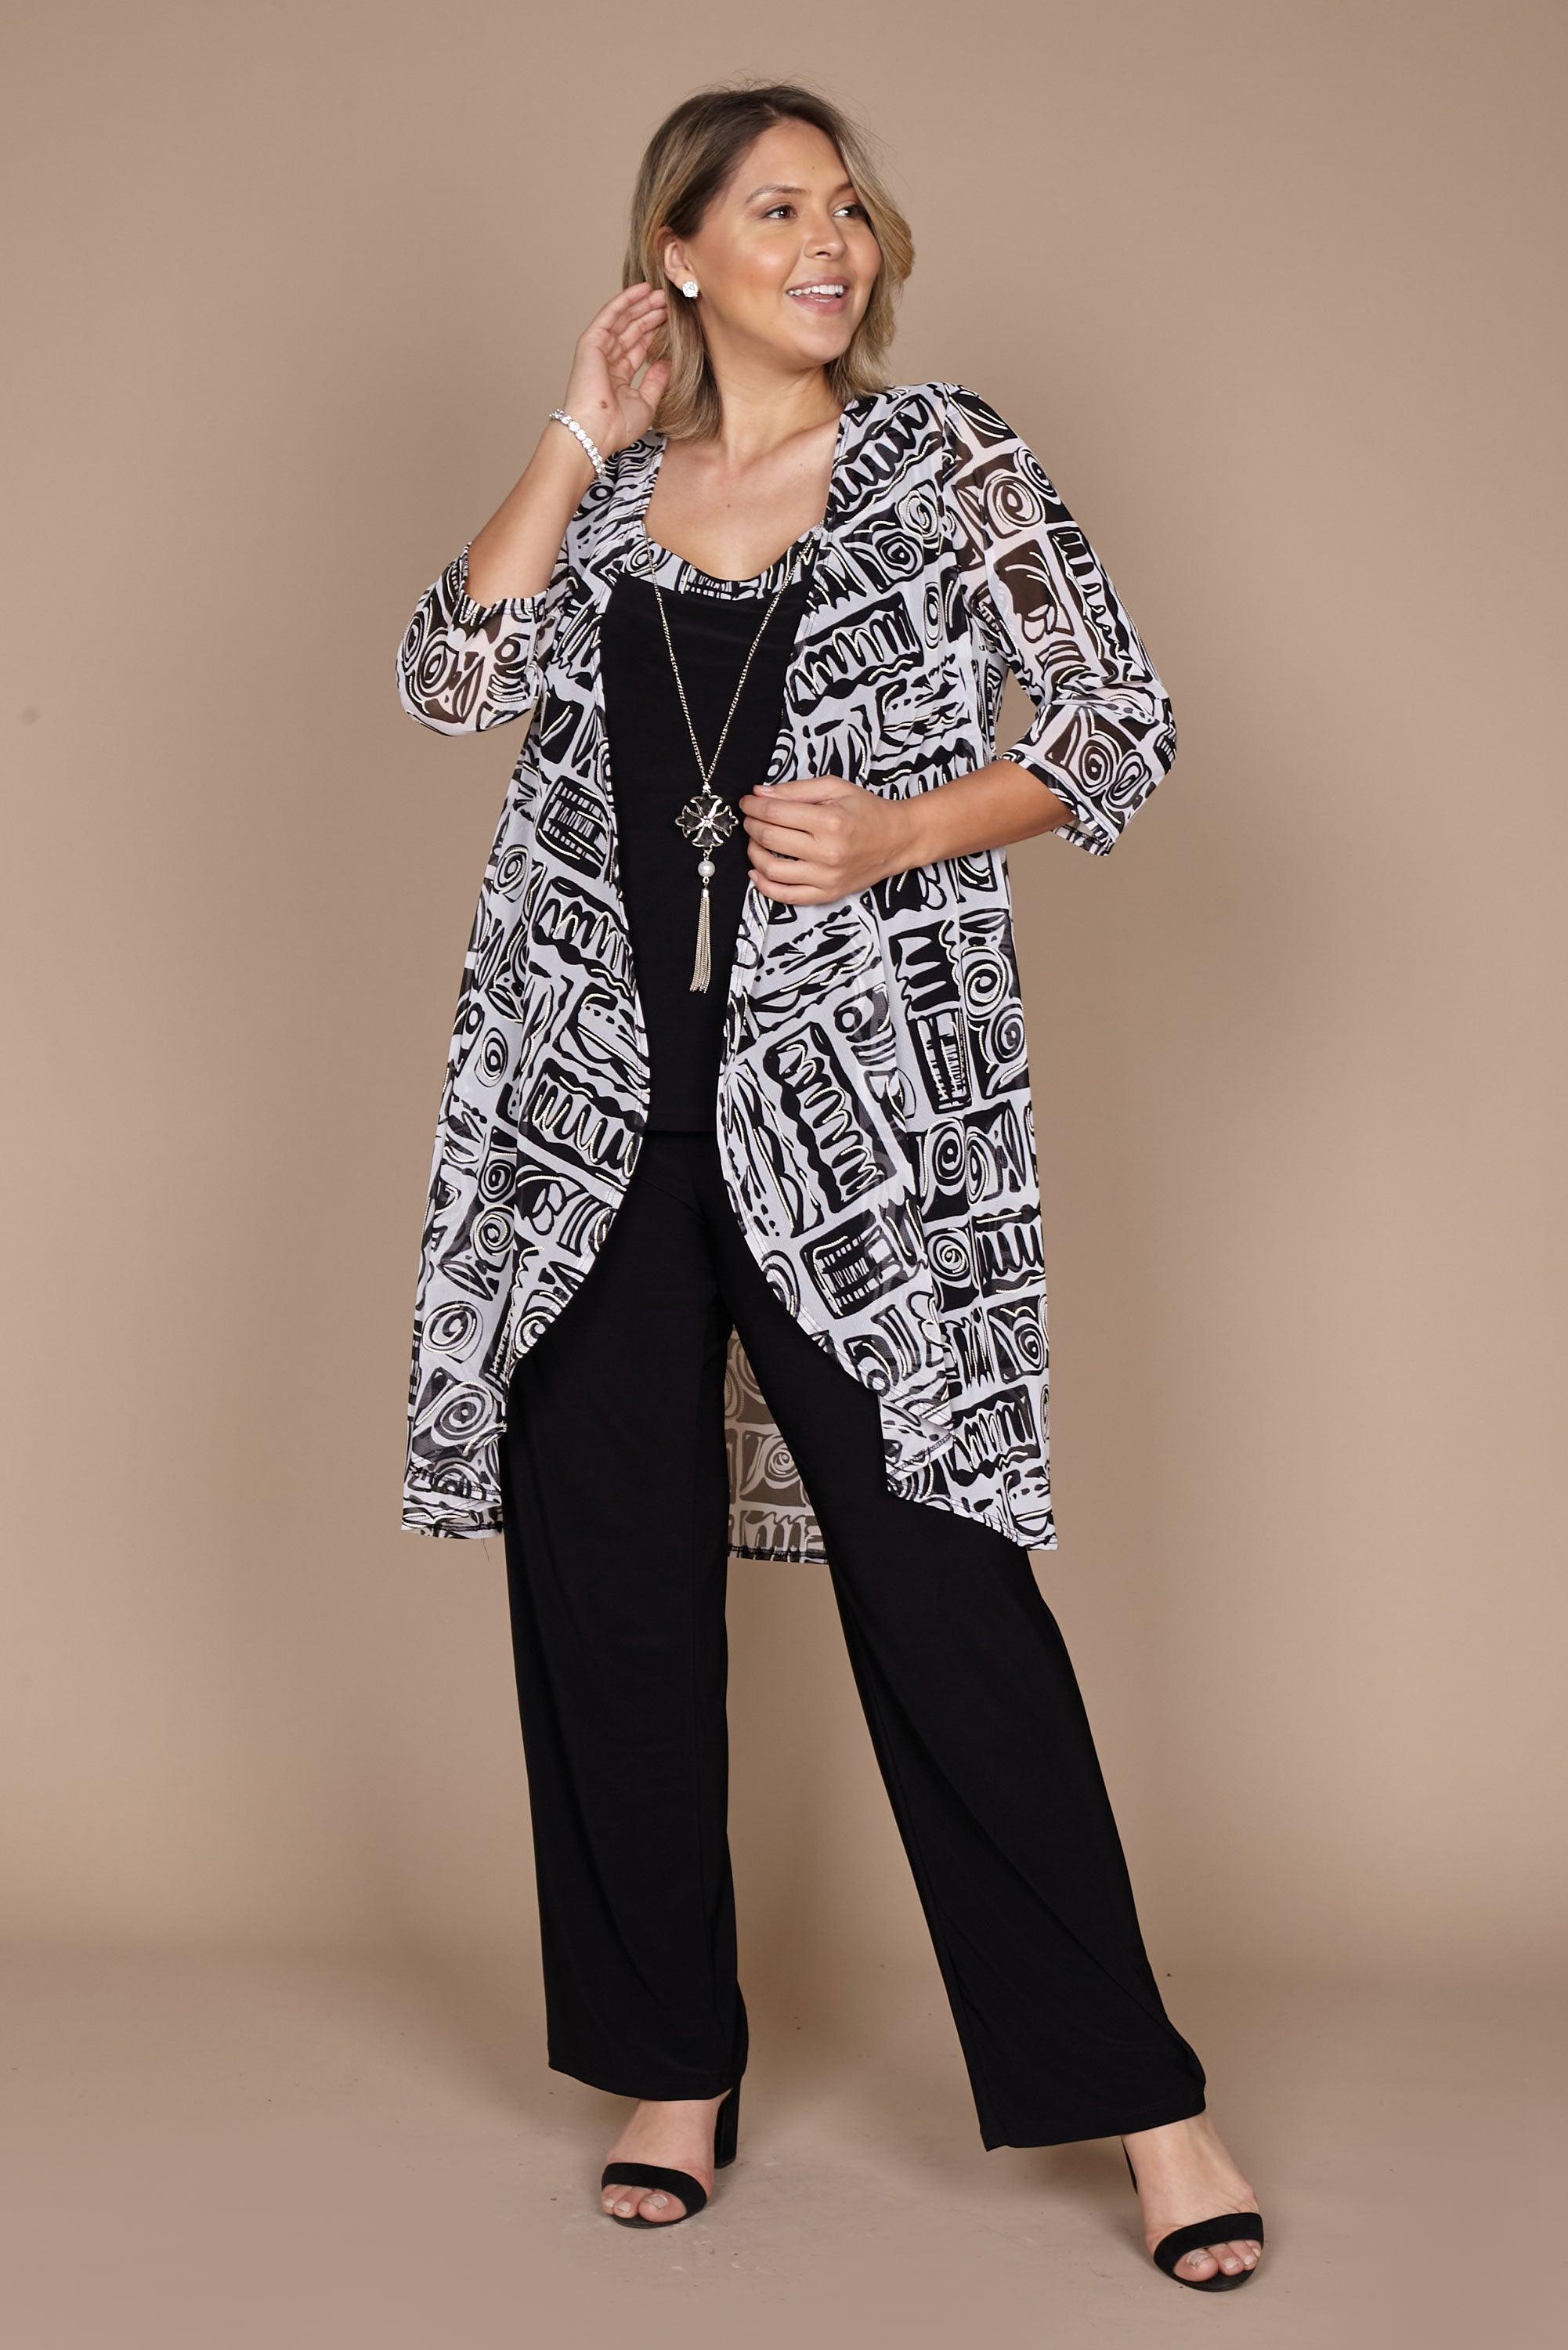 R&M 7248W Plus Size Duster Jacket Pant Suit | The Dress Outlet